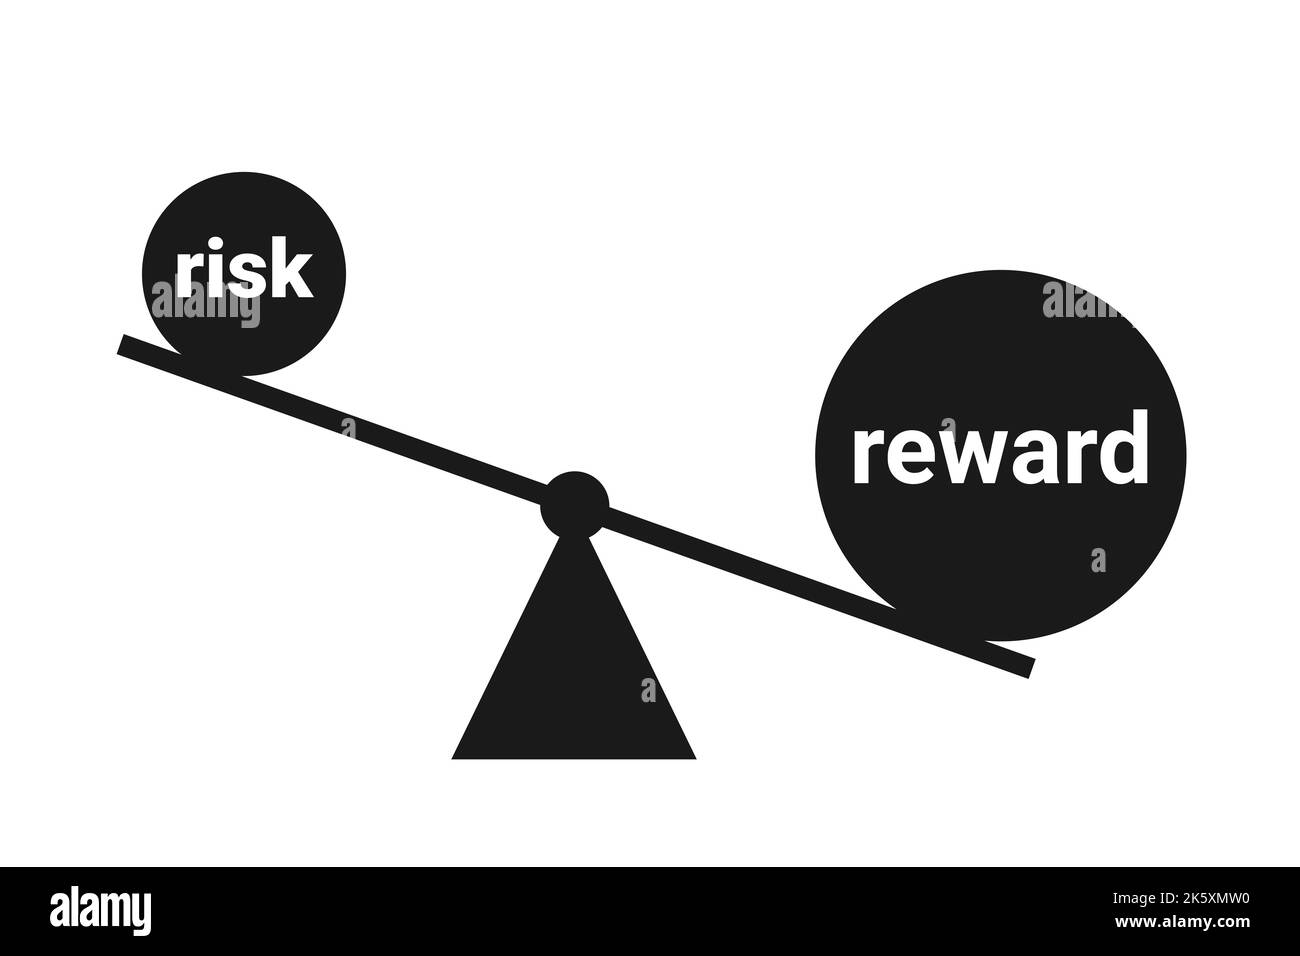 Ratio de riesgo y recompensa: Equilibrio y comparación entre riesgo peligroso y beneficio y ganancia rentables. Ilustración vectorial aislada en blanco. Foto de stock